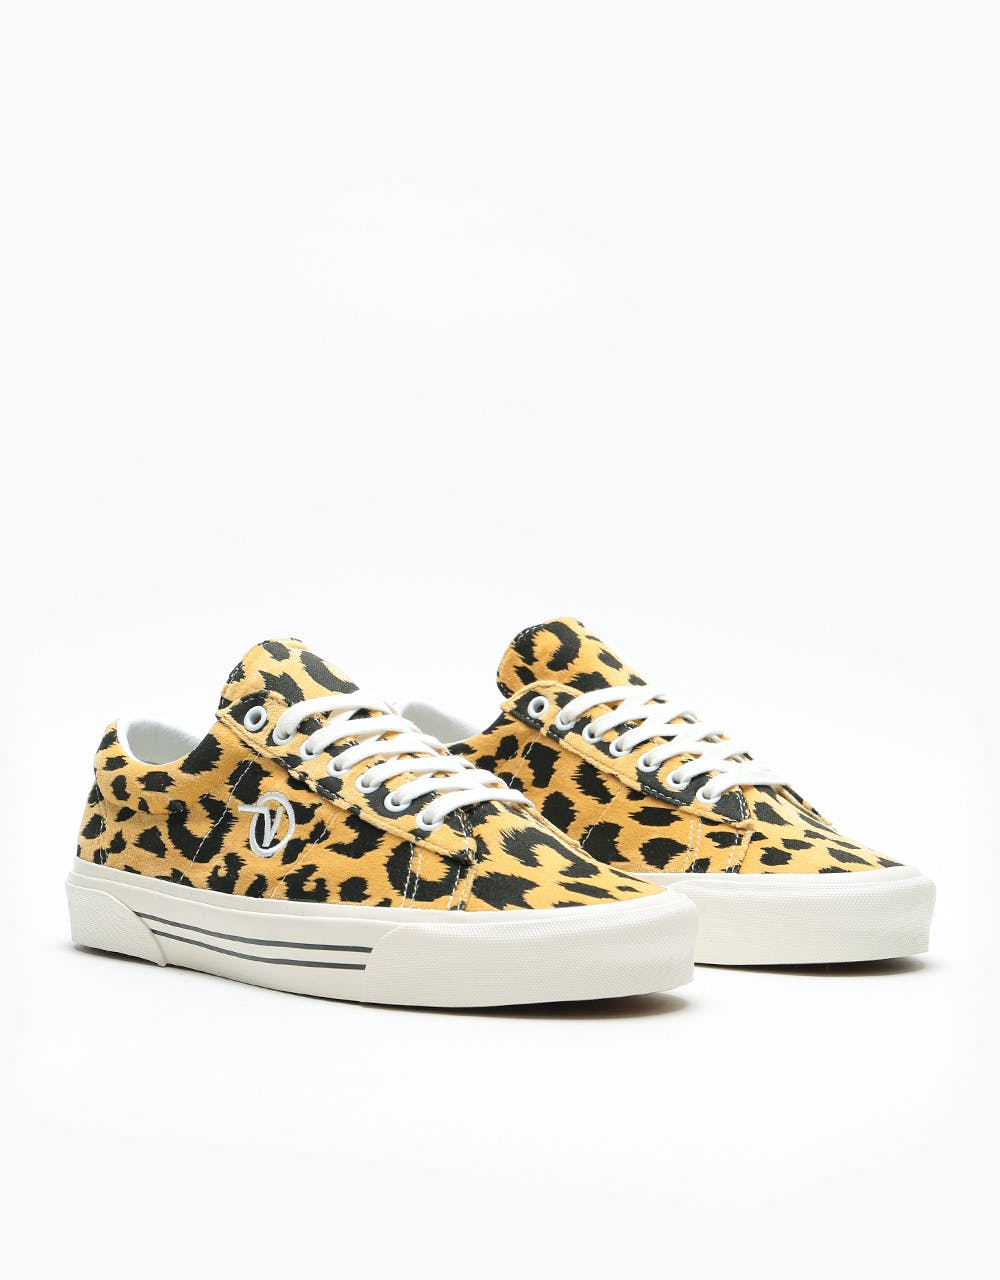 Vans Sid DX Skate Shoes - (Anaheim Factory) OG Leopard